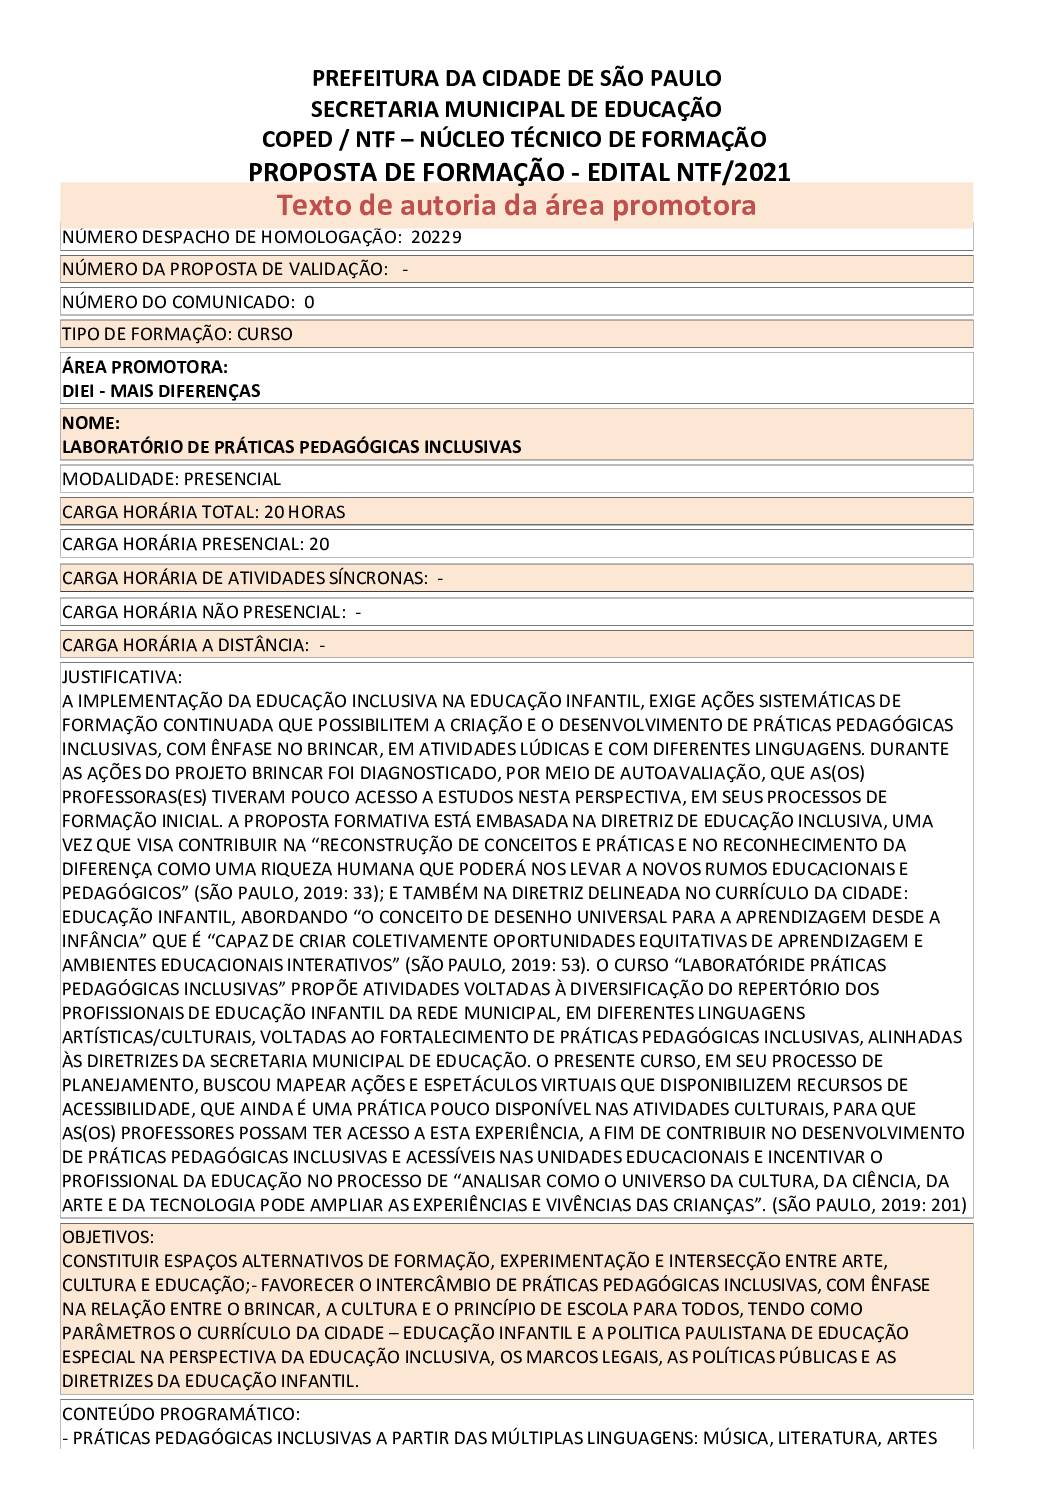 PDF com informações sobre o curso: LABORATÓRIO DE PRÁTICAS PEDAGÓGICAS INCLUSIVAS